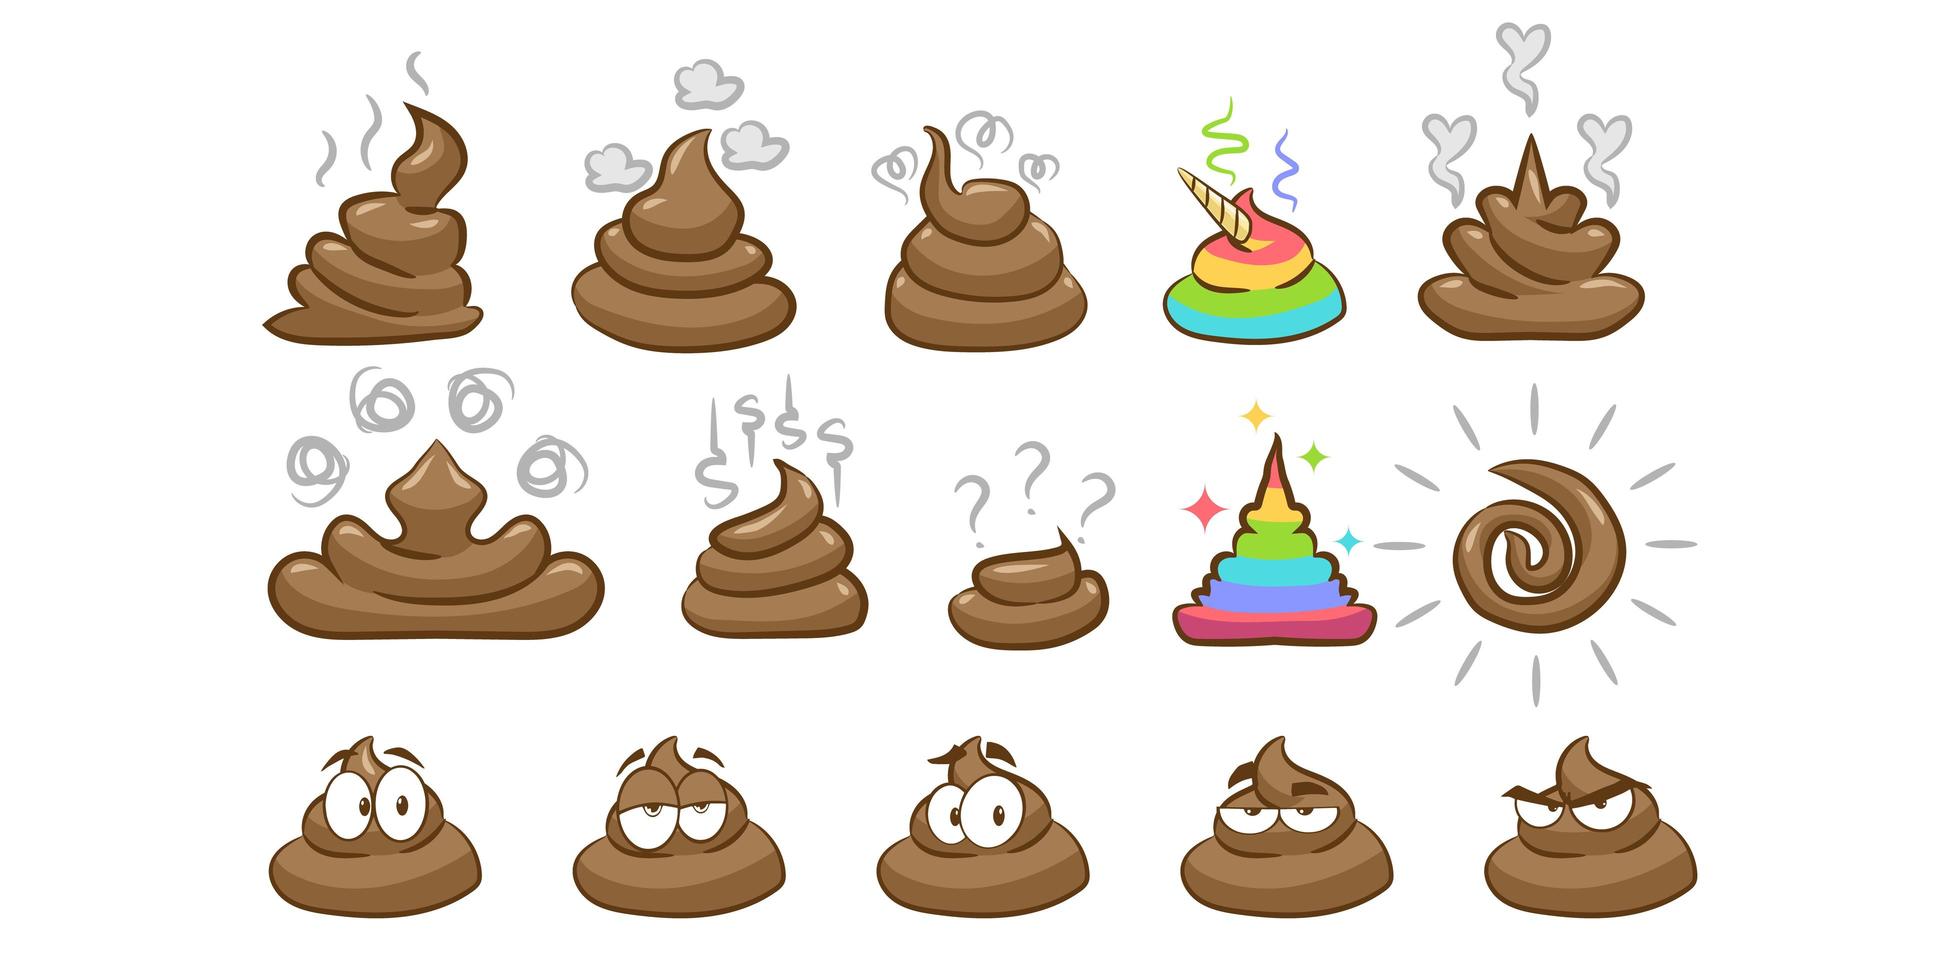 Gambar emoji kotoran dalam berbagai bentuk